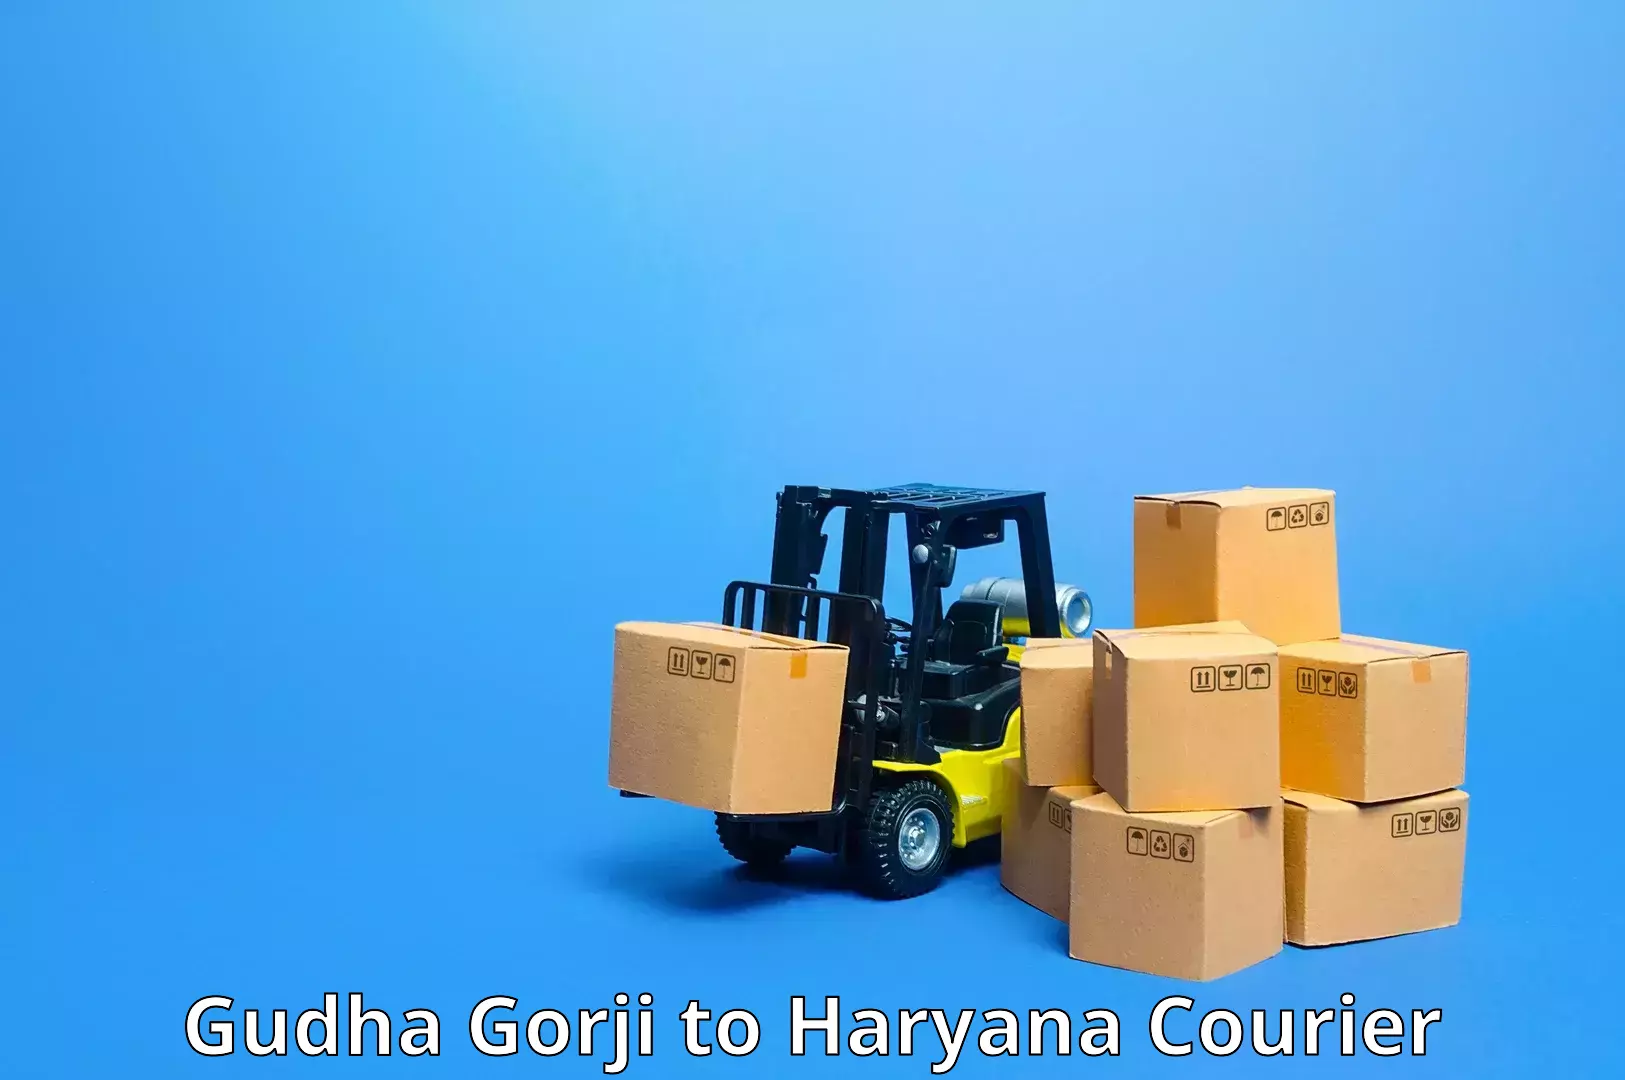 Digital courier platforms Gudha Gorji to Haryana